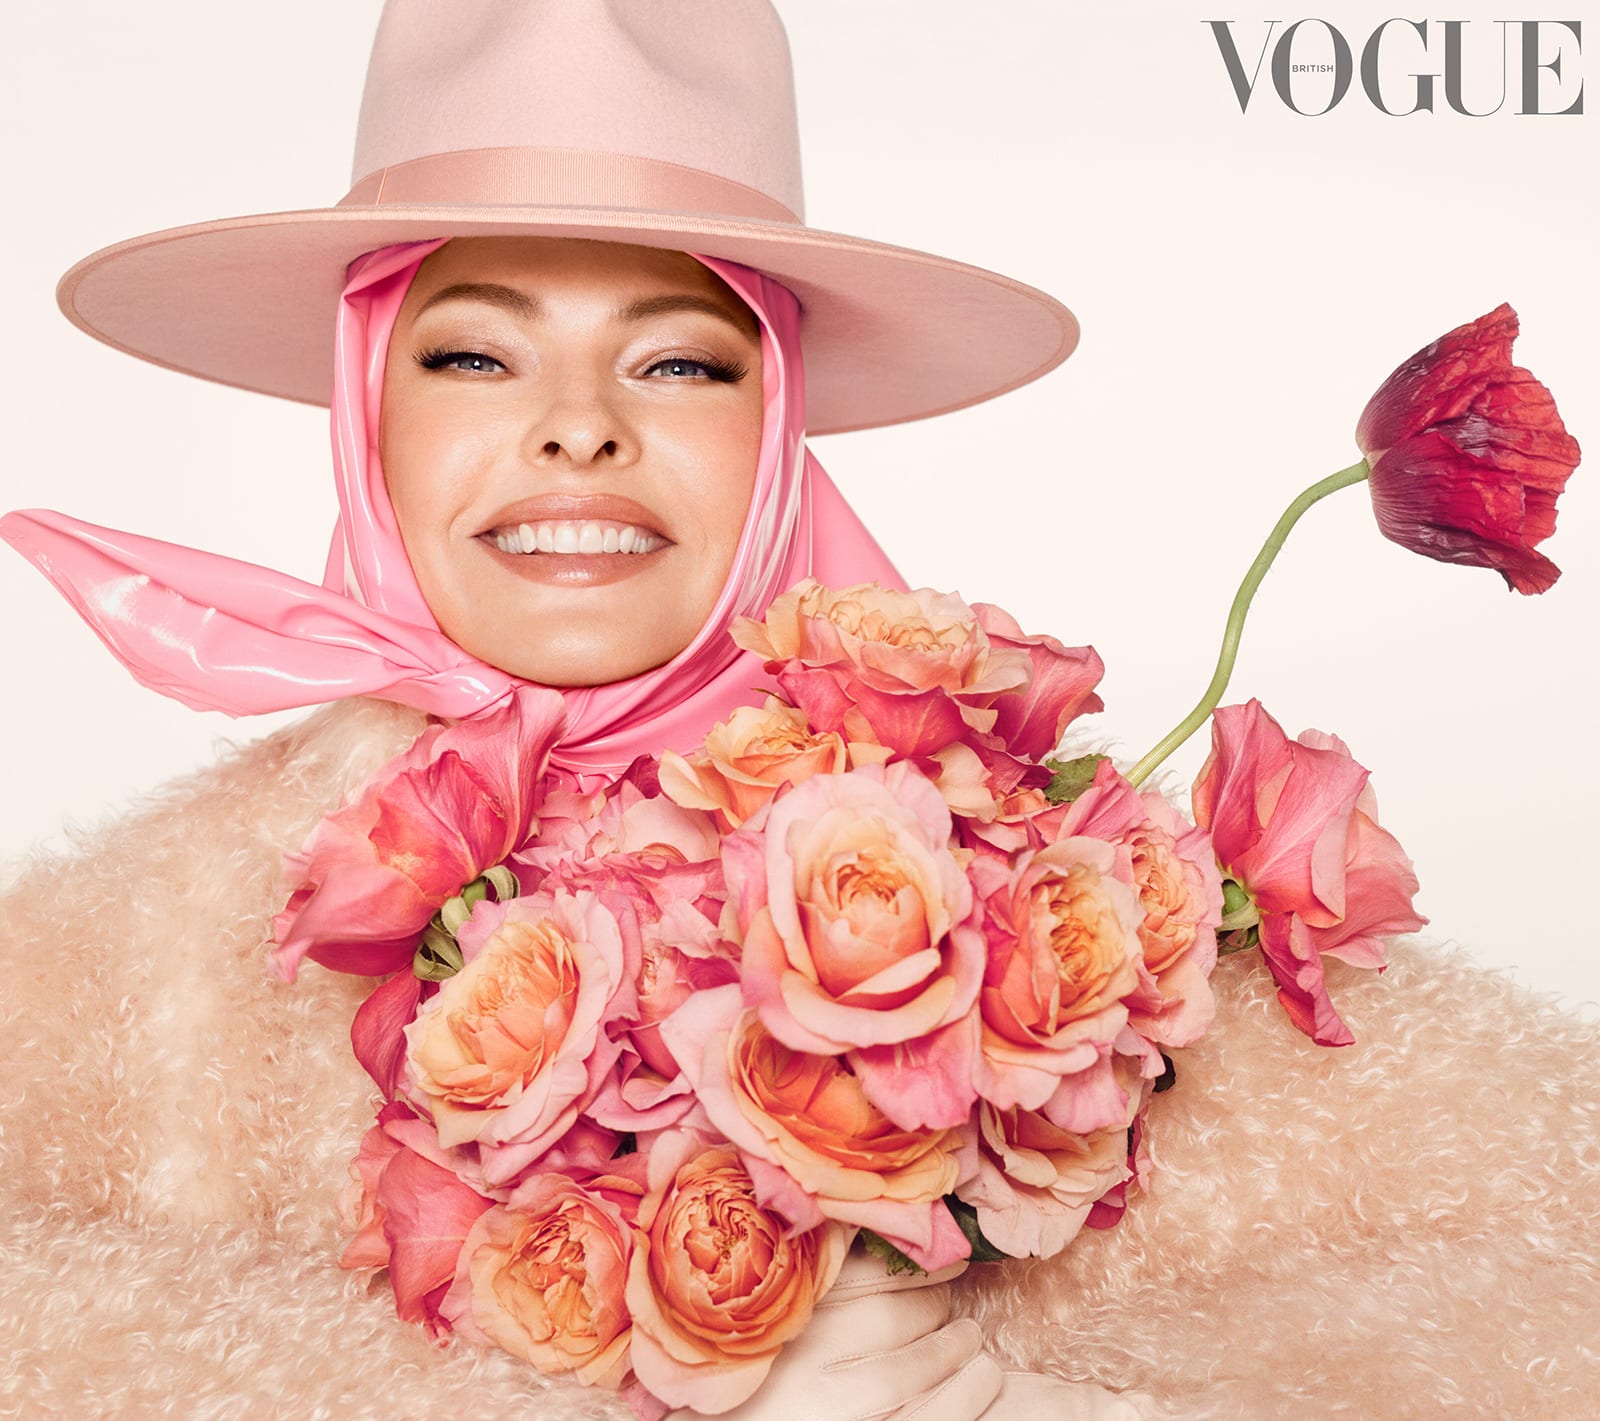 بعد تعرضها للتشويه من عملية تجميلية.. هكذا ظهرت عارضة الأزياء ليندا إيفانجليستا على غلاف مجلة "فوغ"